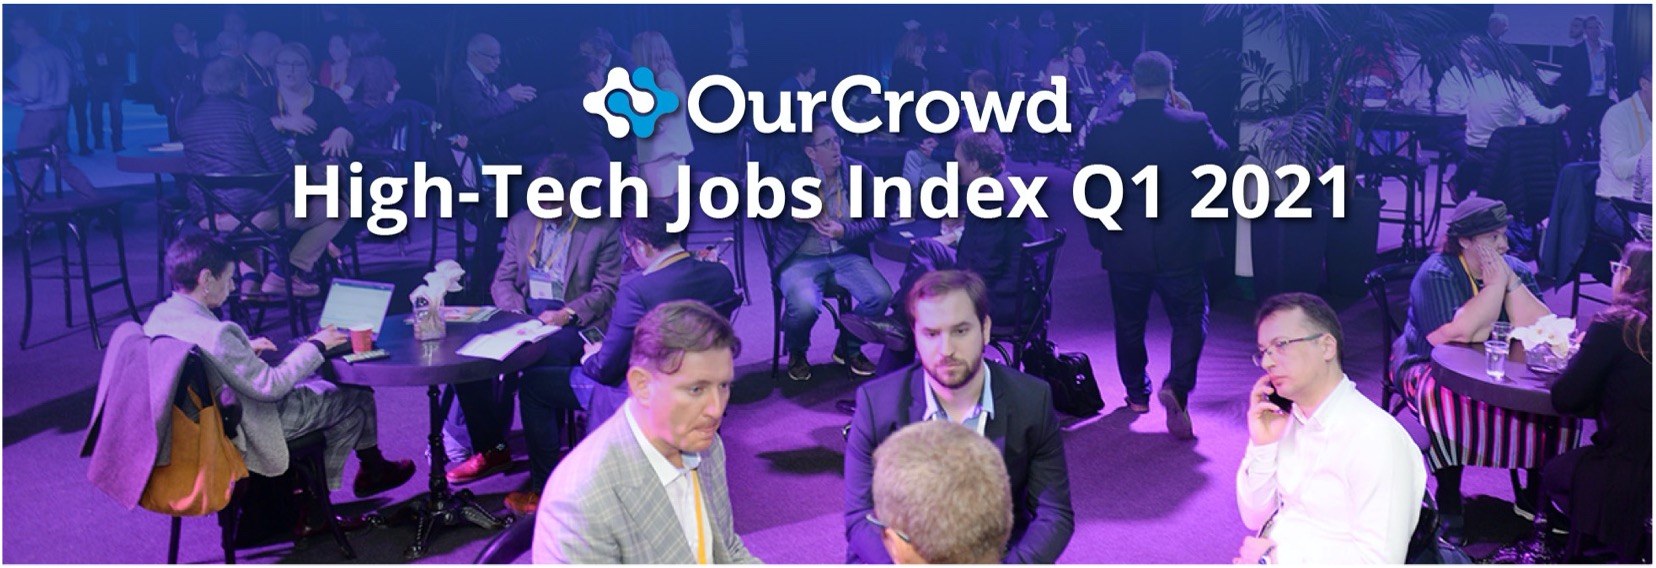 OurCrowd High-Tech Jobs Index Q1 2021